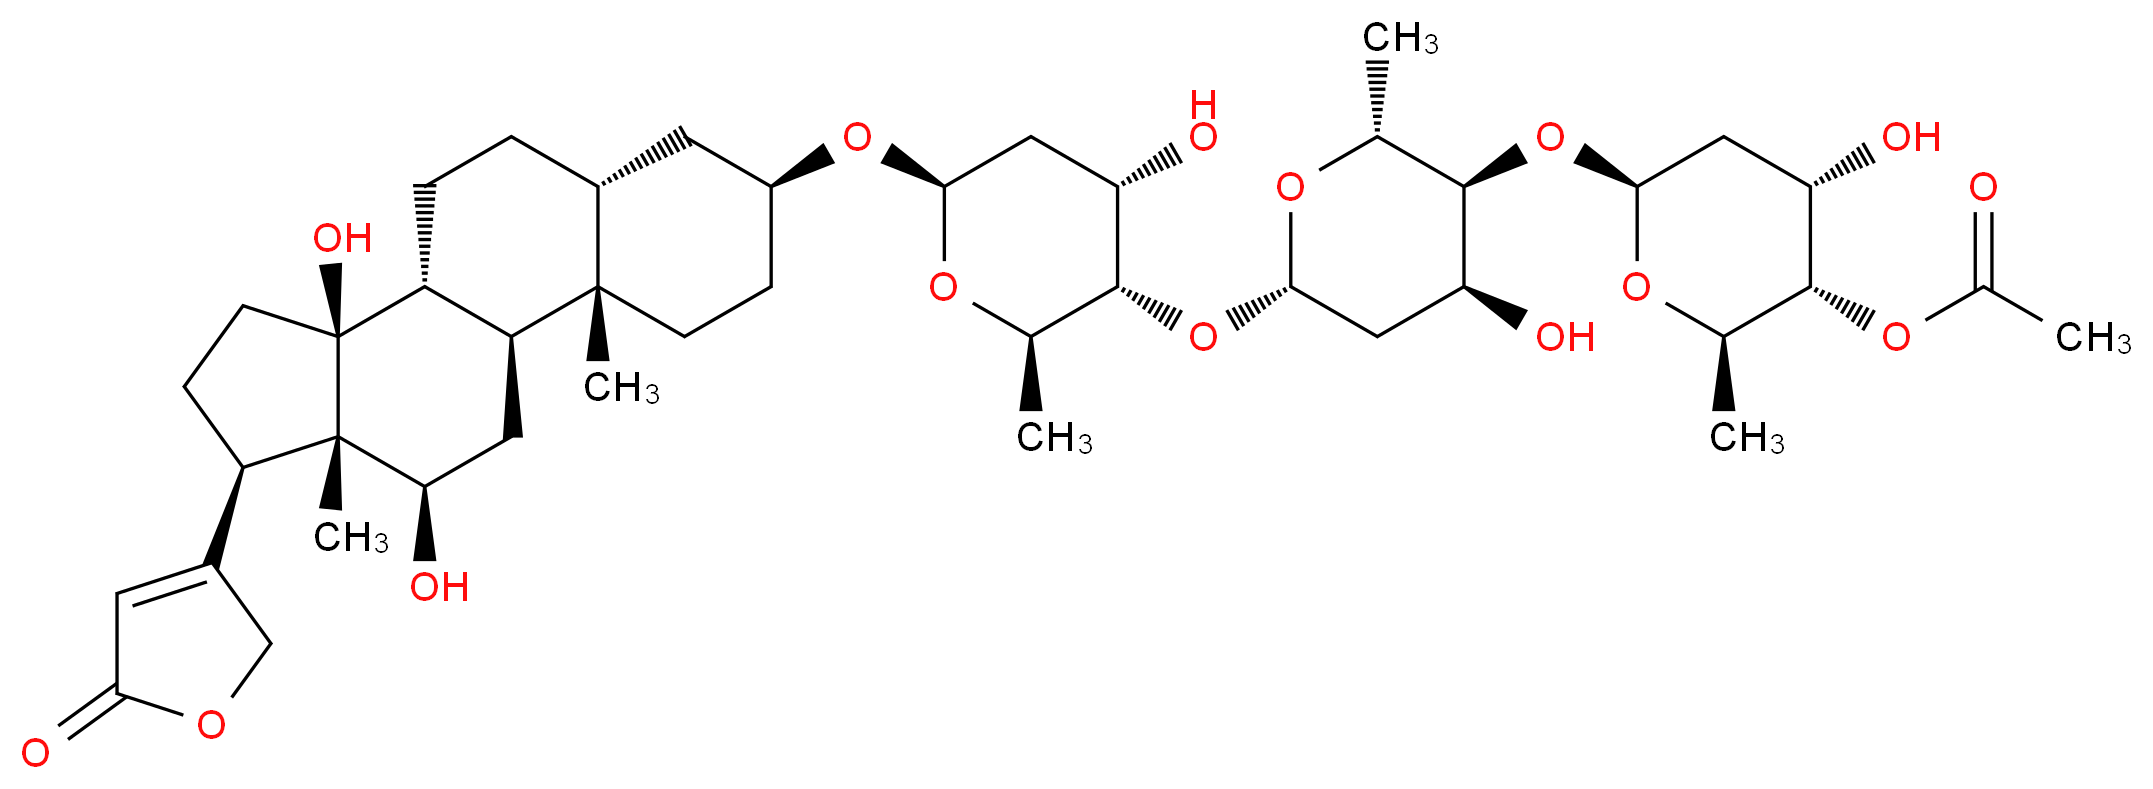 5355-48-6 molecular structure